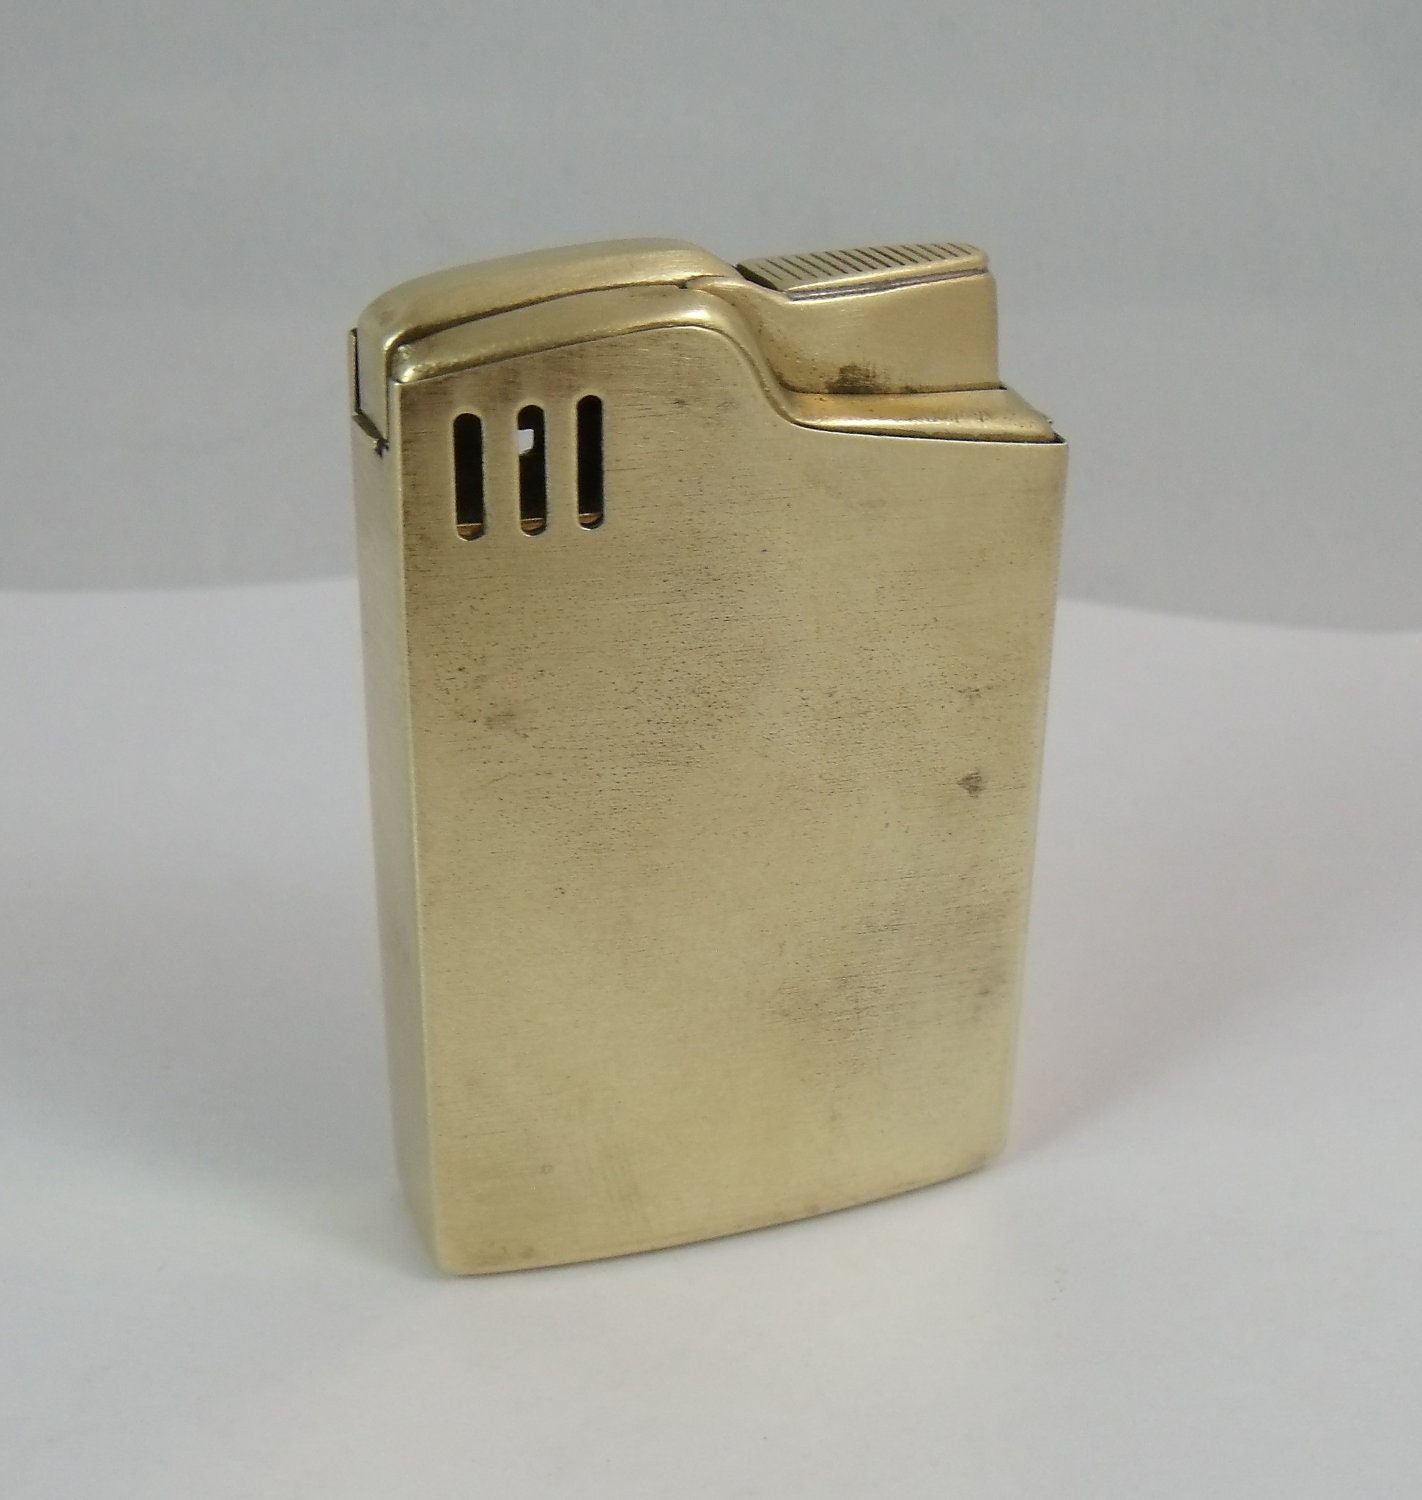 Antique cigarette lighter - TheFind